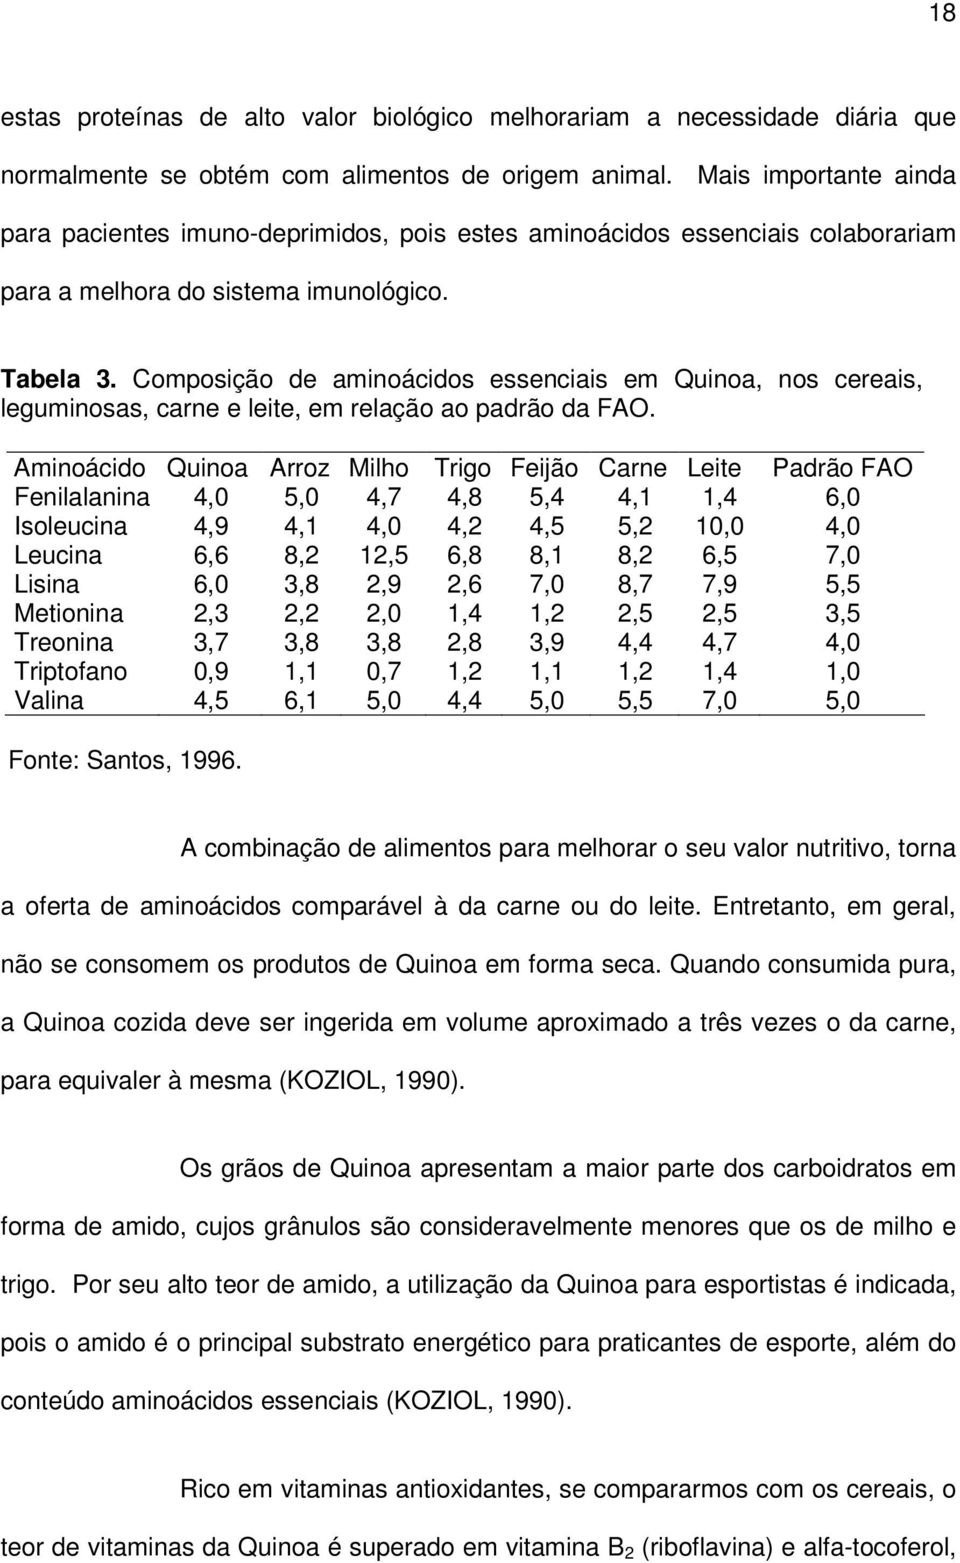 Composição de aminoácidos essenciais em Quinoa, nos cereais, leguminosas, carne e leite, em relação ao padrão da FAO.